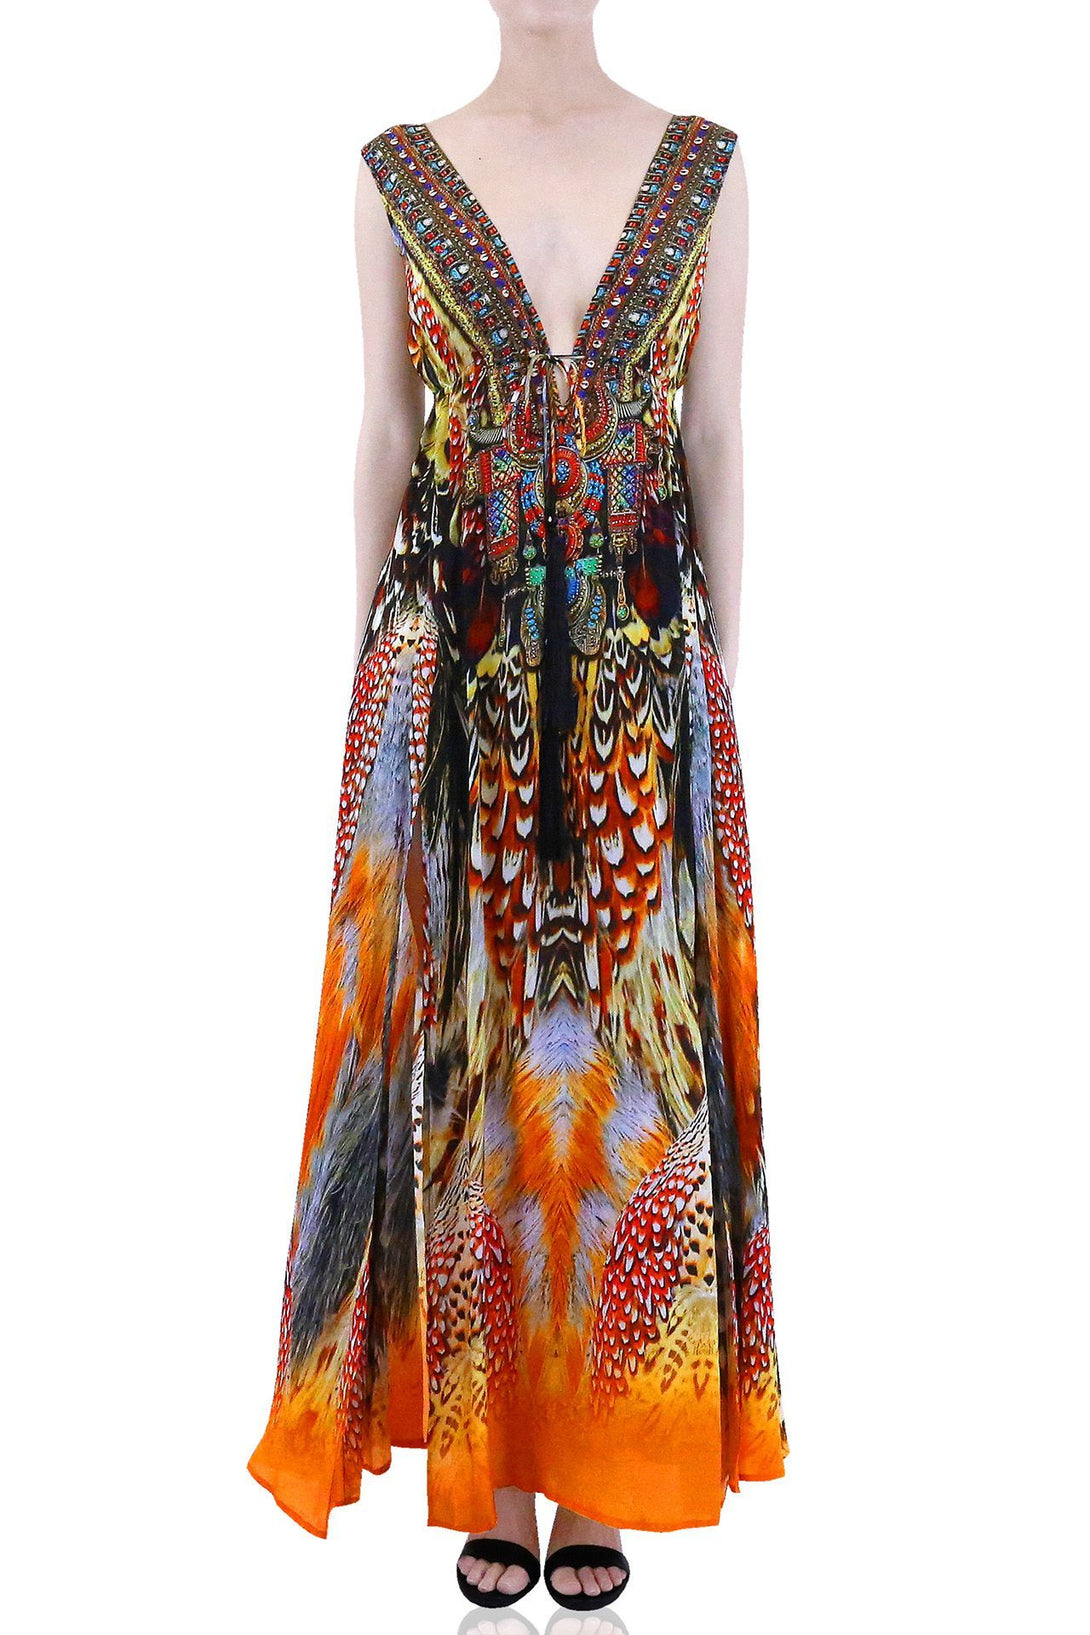  maxi dresses for women orange, formal dresses for women, plus size maxi dresses, Shahida Parides,